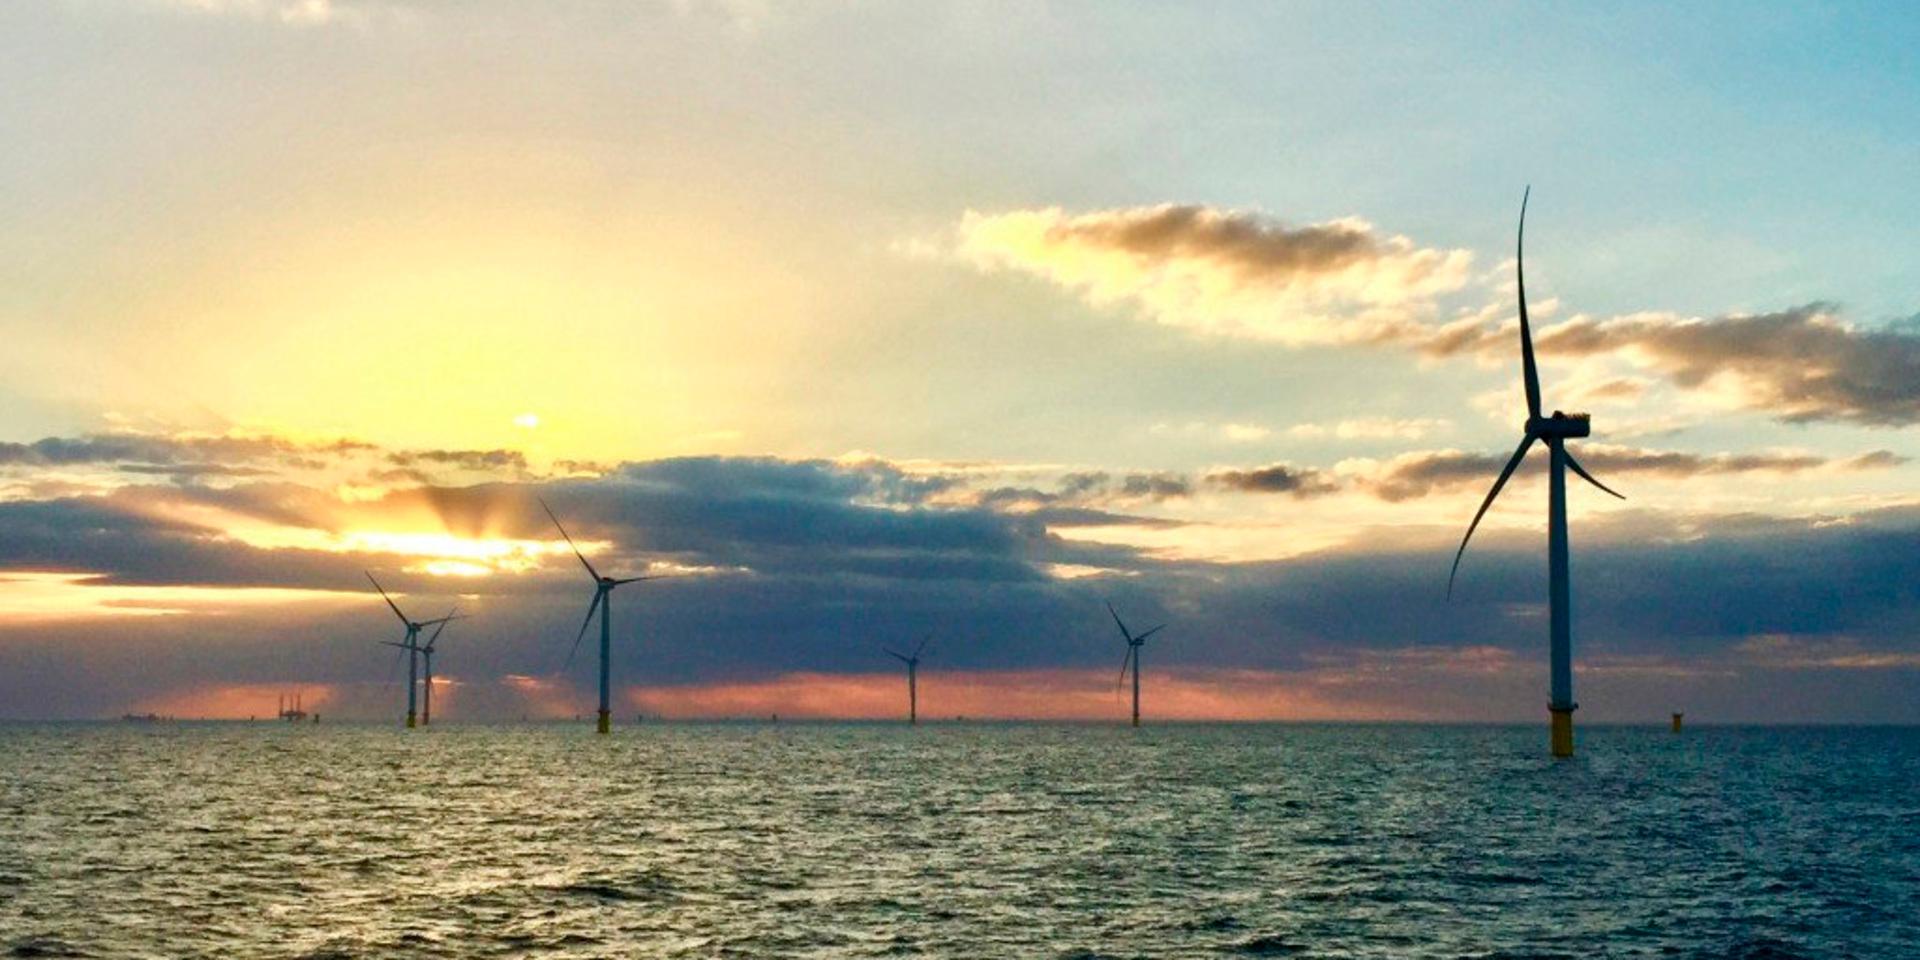 Vindkraften byggs ut allt mer – och utanför Bohuskusten finns det långtgående planer på marina vindkraftsparker. Insändarskribenten Kent Berg höjer ett varningens finger inför utvecklingen.